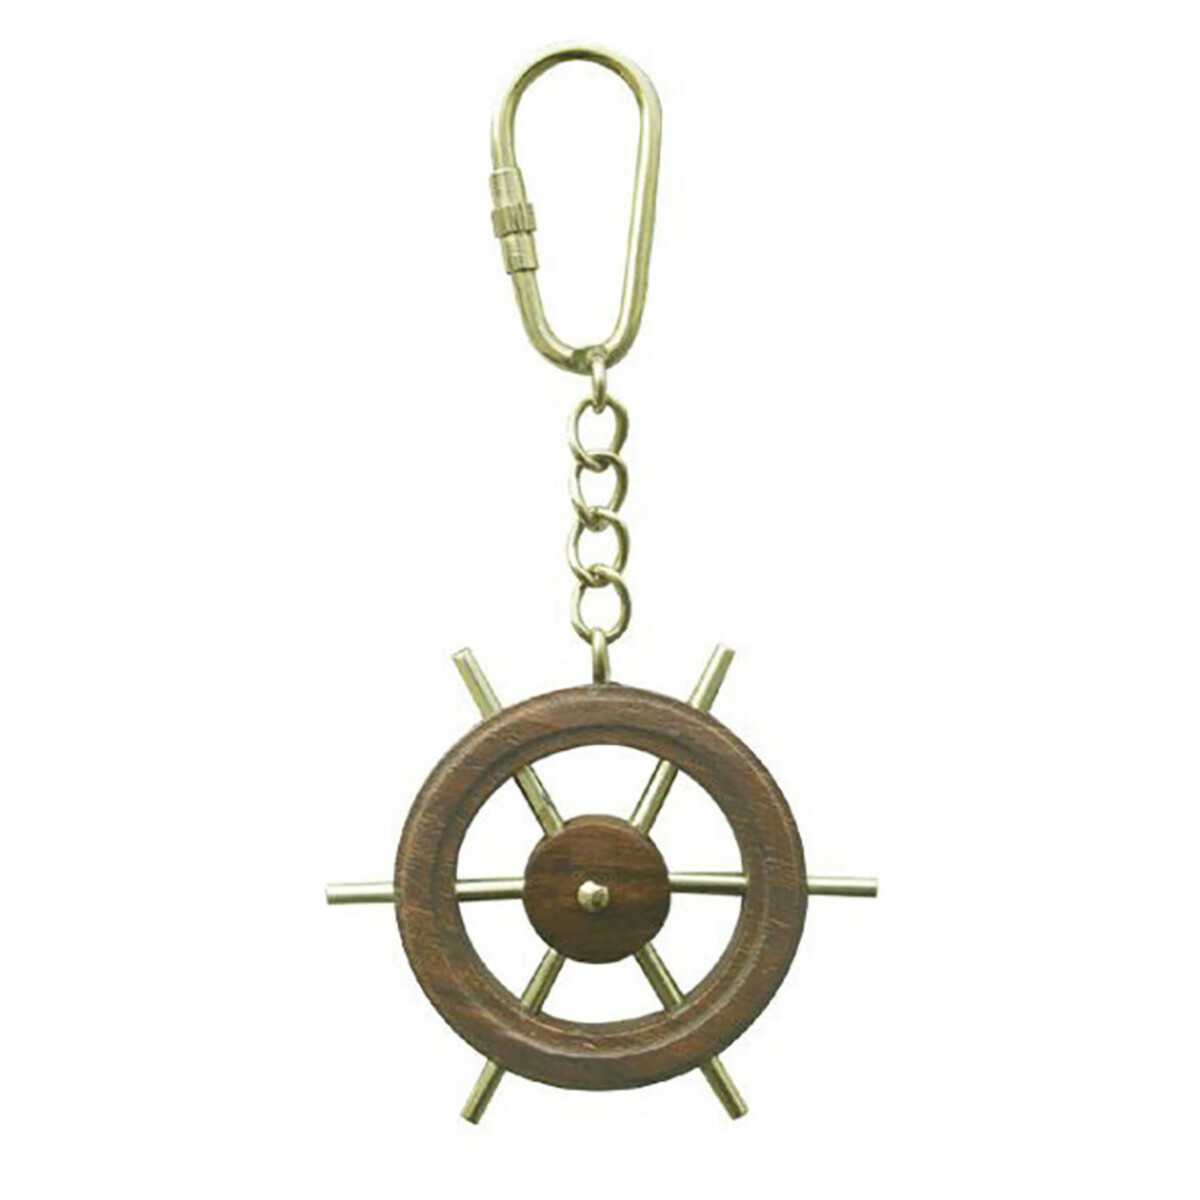 5cm hoch Anker-Schlüsselanhänger Schlüssel-Anhänger maritim Anker Nautik Boot 